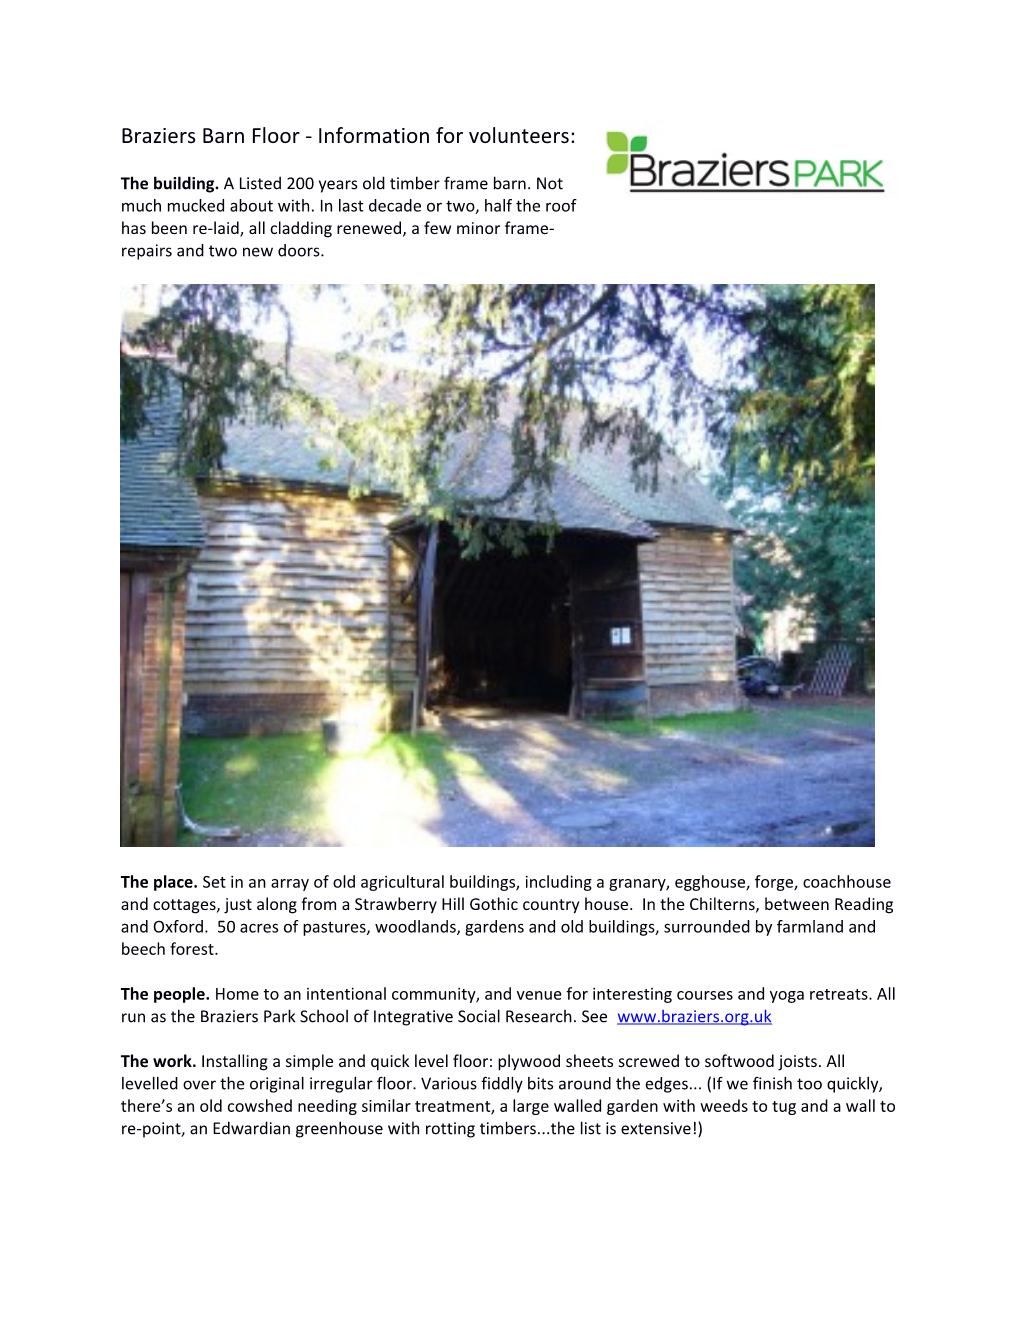 Braziers Barn Floor - Information for Volunteers